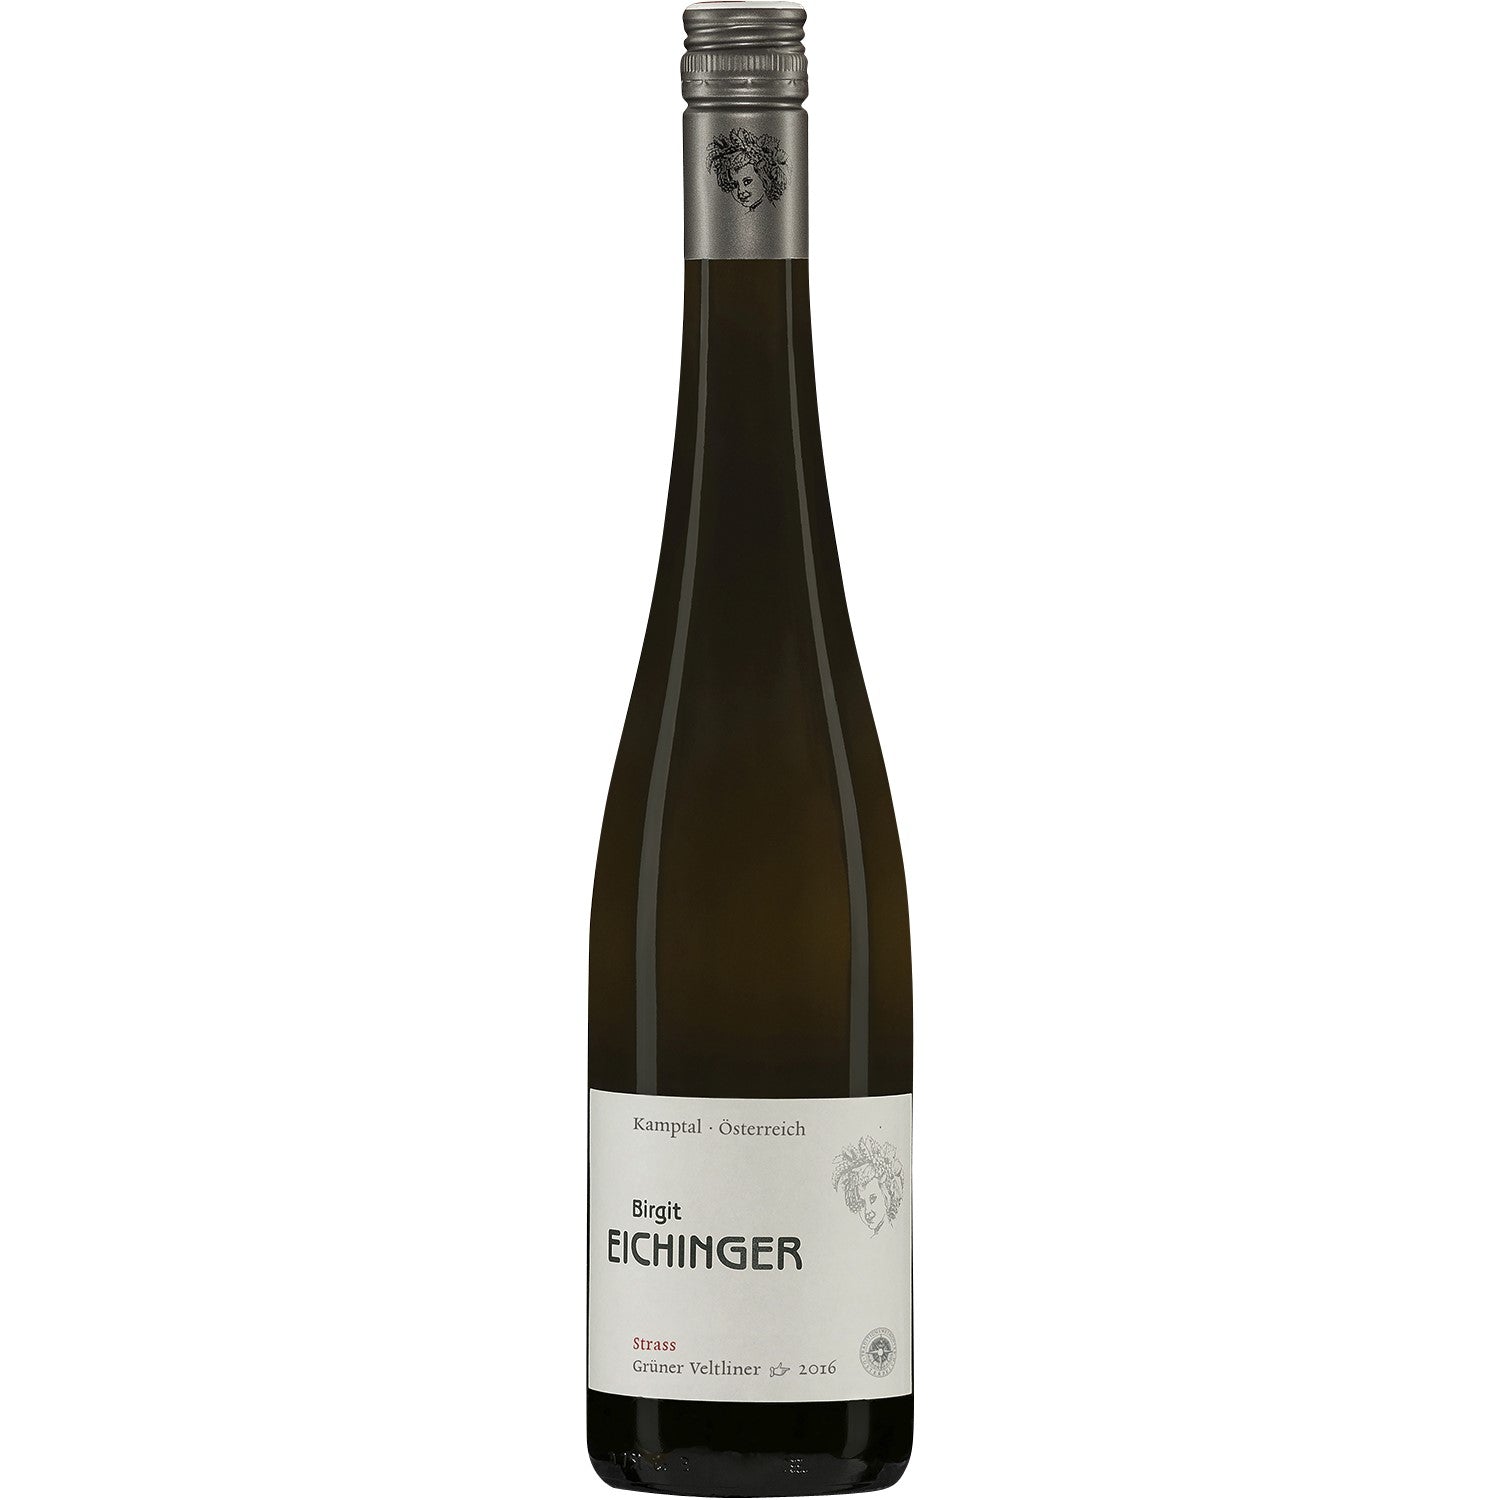 Birgit Eichinger Grüner Veltliner Strass Kamptal DAC Weißwein Wein trocken Österreich (6 x 0.75l) - Versanel -